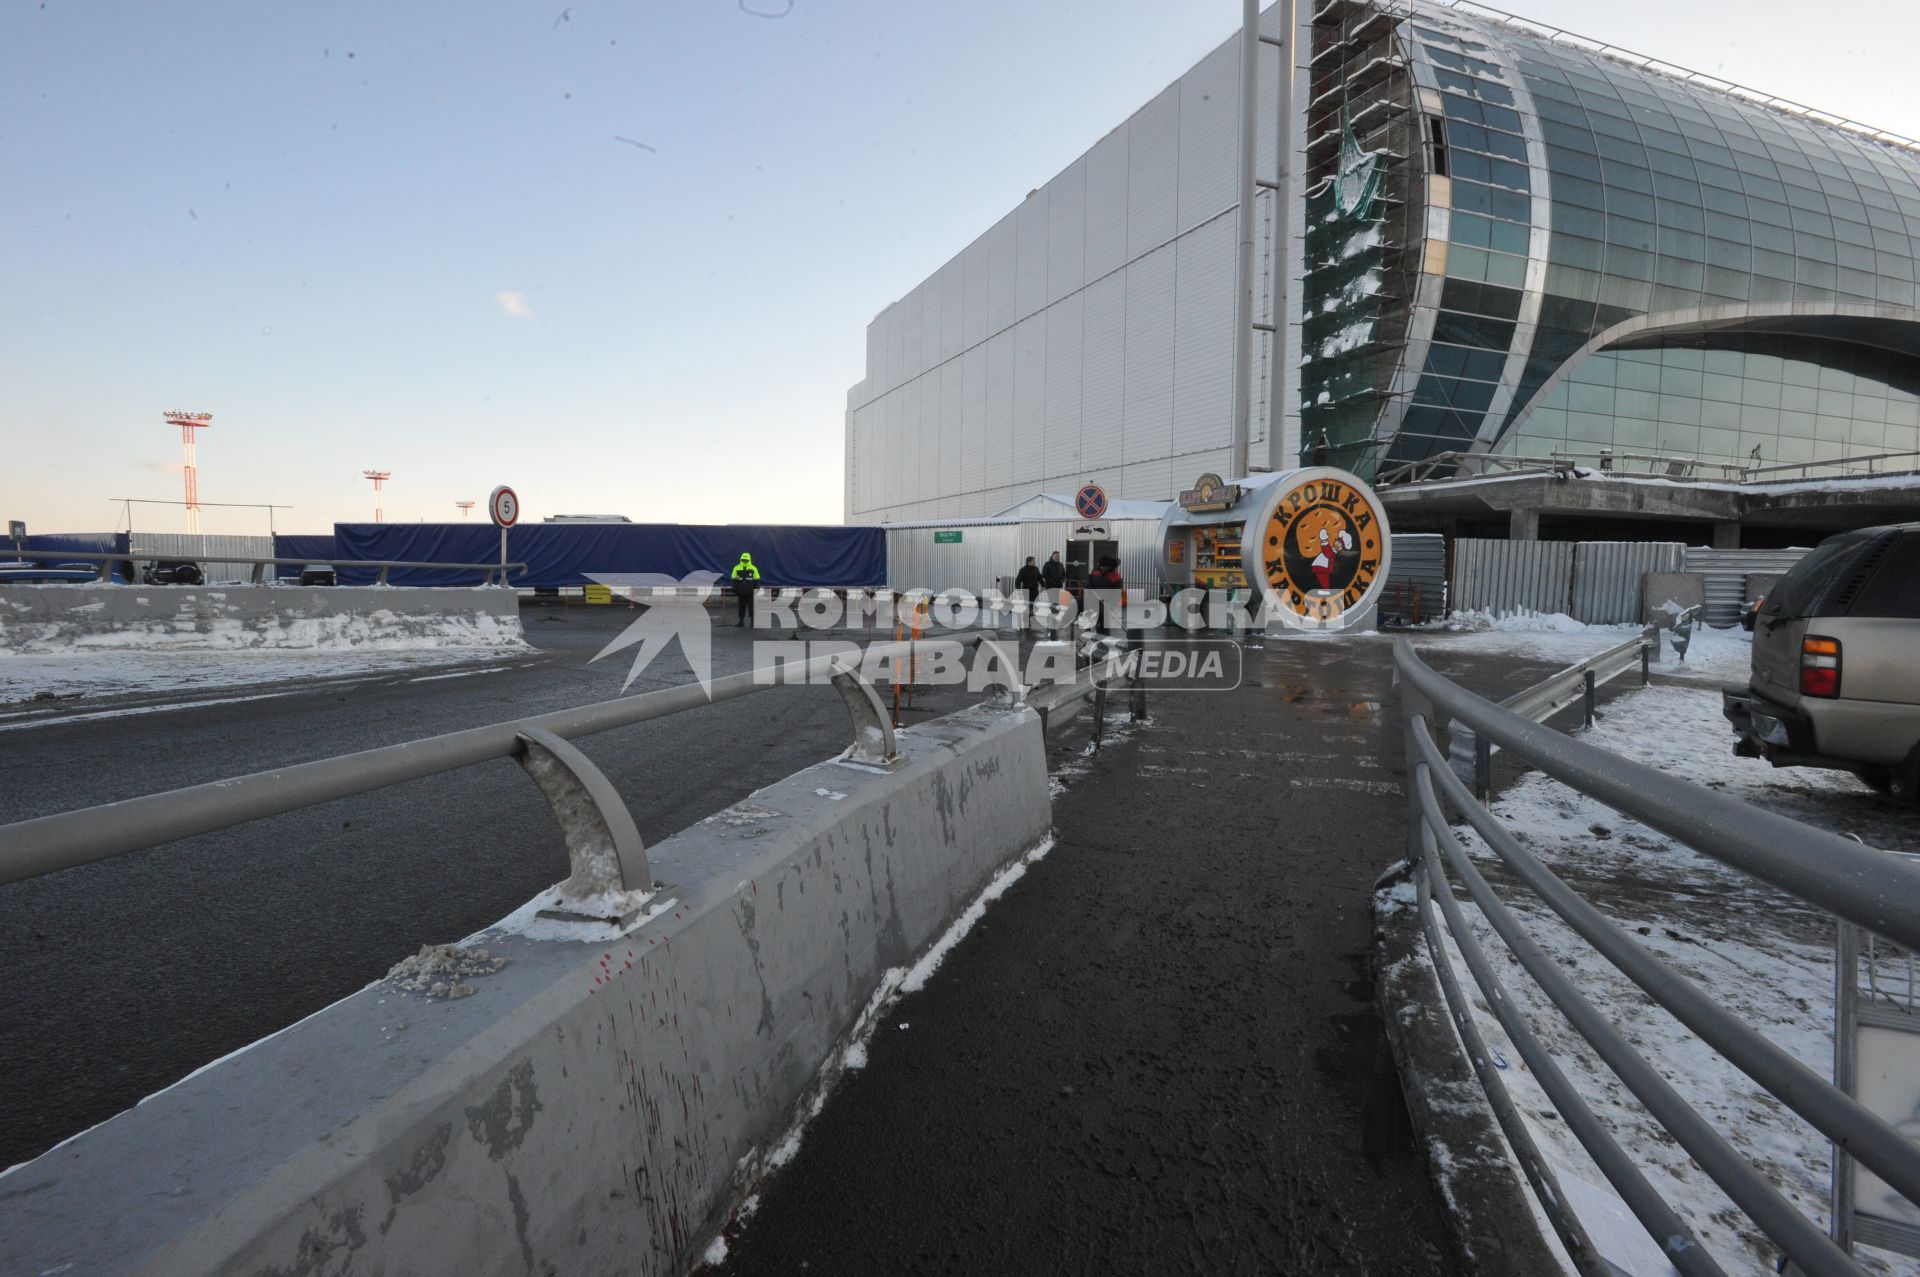 Московская область. Место у аэропорта Домодедово, где 24 января 2011 г. произошел взрыв.